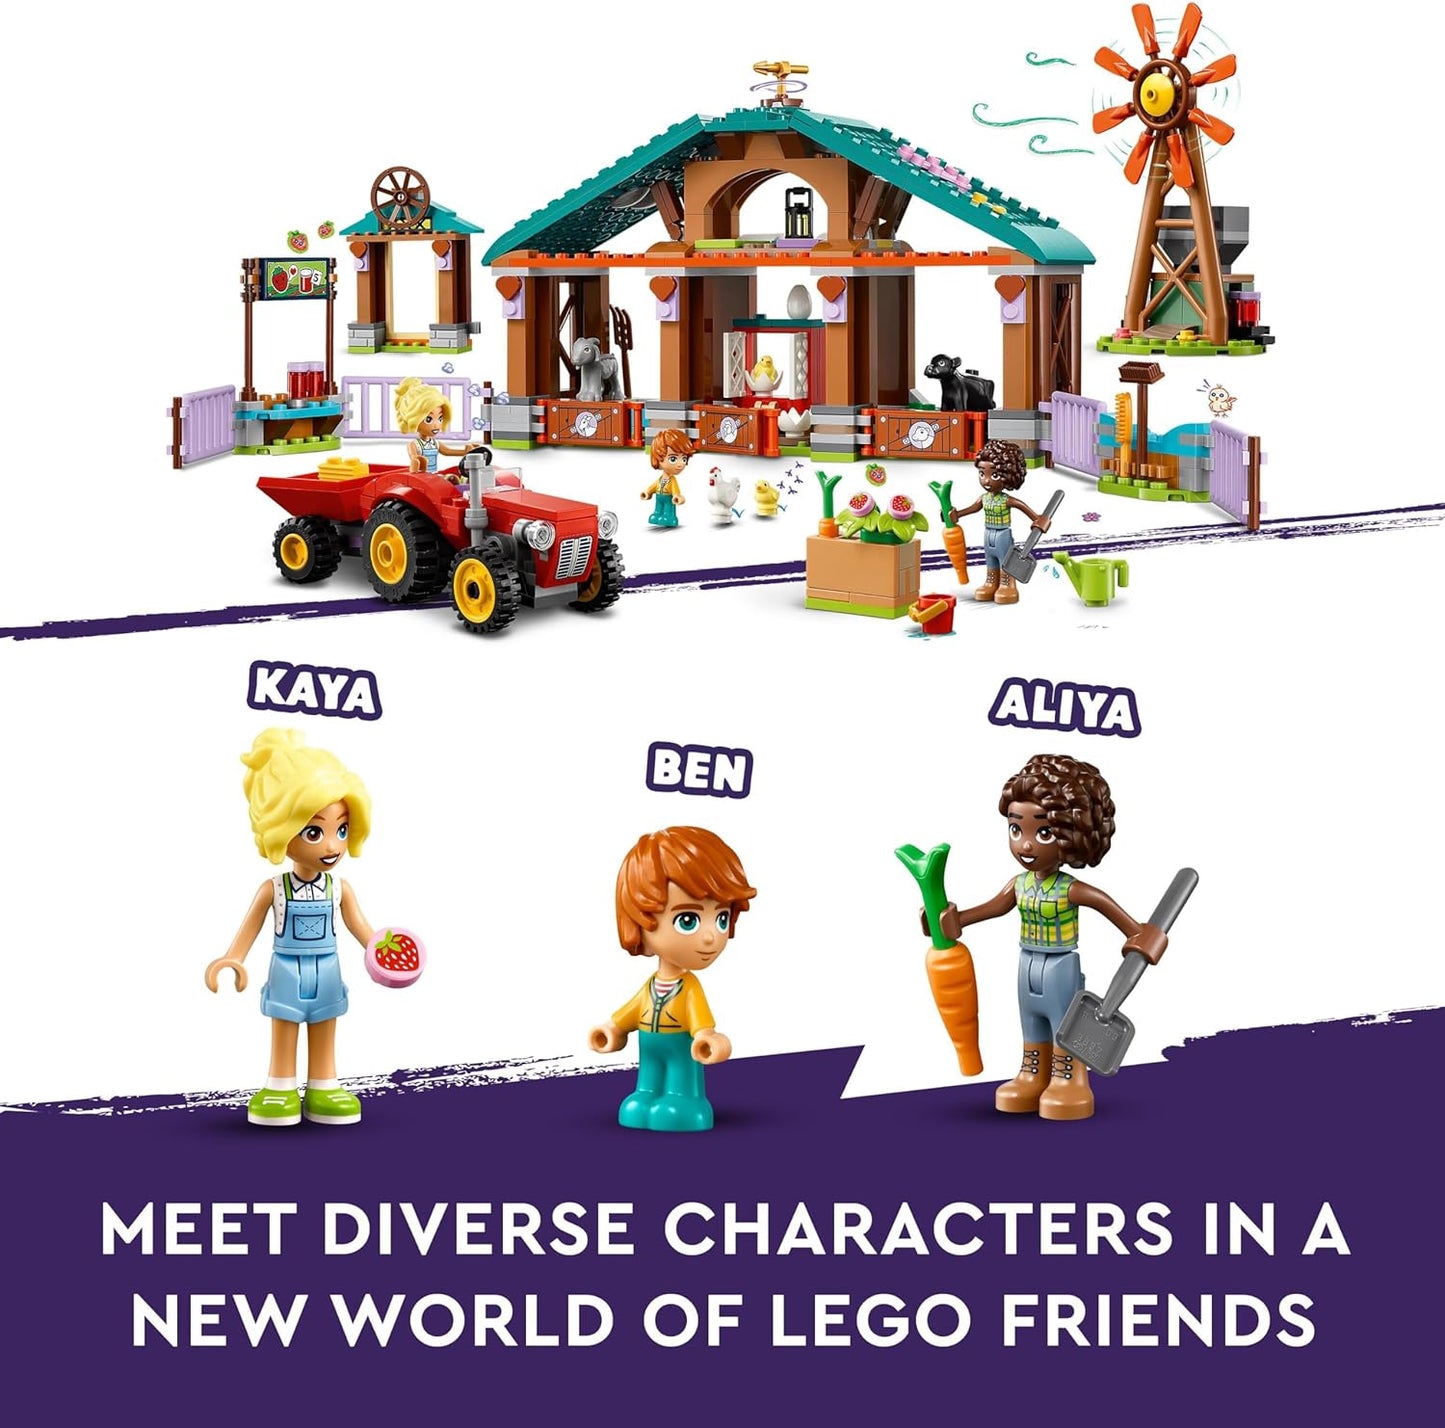 LEGO Friends Farm Animal Sanctuary, conjunto de brinquedos com trator para meninas, meninos e crianças com mais de 6 anos, conjunto de dramatização inclui 3 figuras de personagens, 5 animais e acessórios de comida 42617